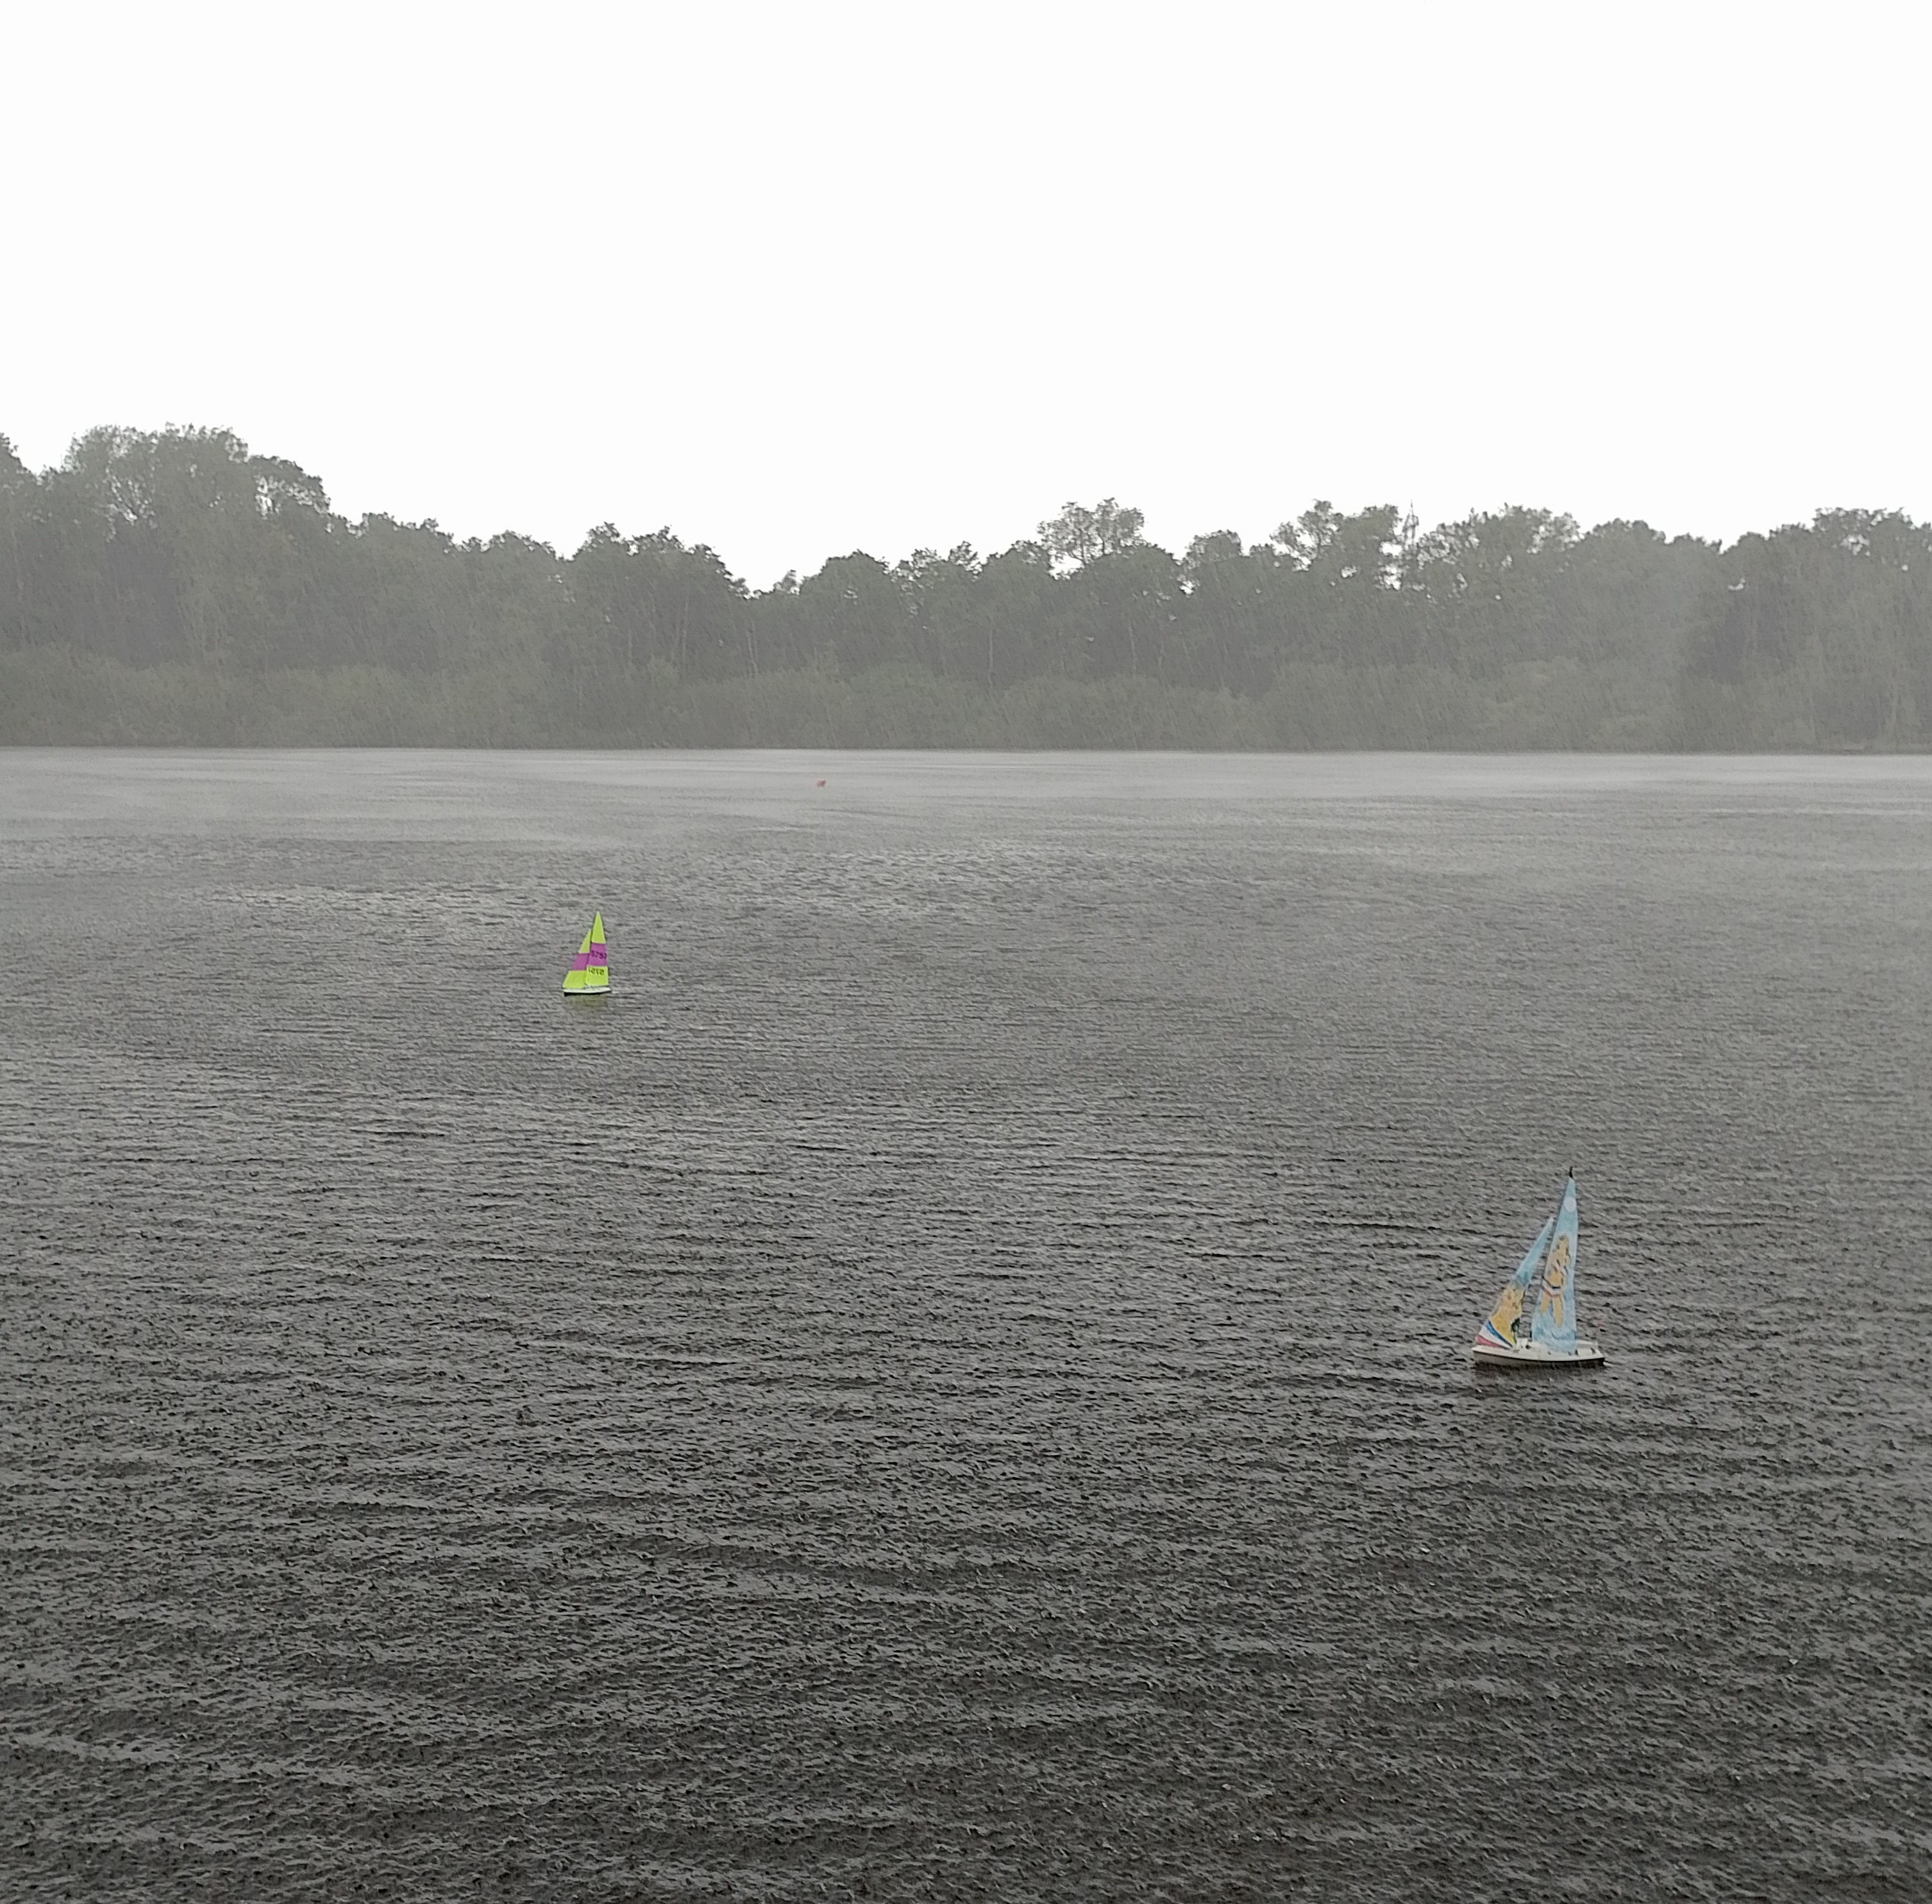 MM segelt mit Regen, hoffentlich etwas schneller?